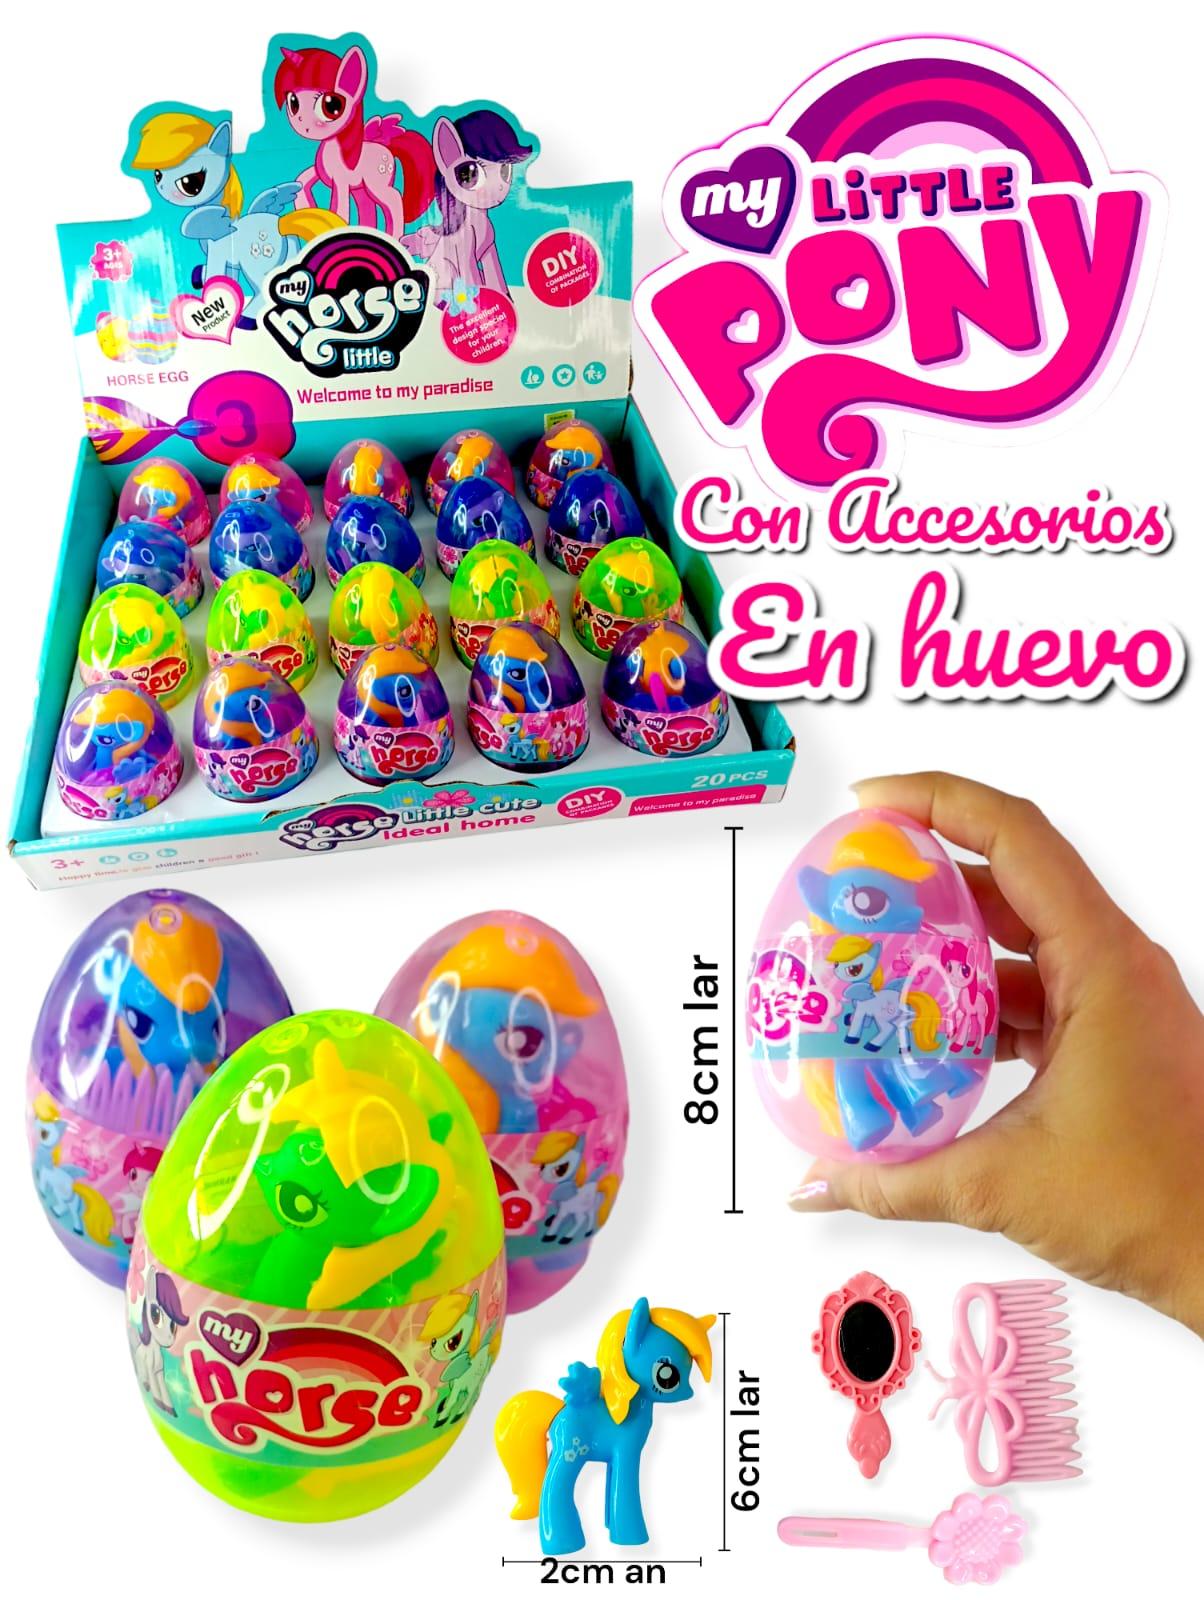 My Little Pony Con Accesorios En Huevo